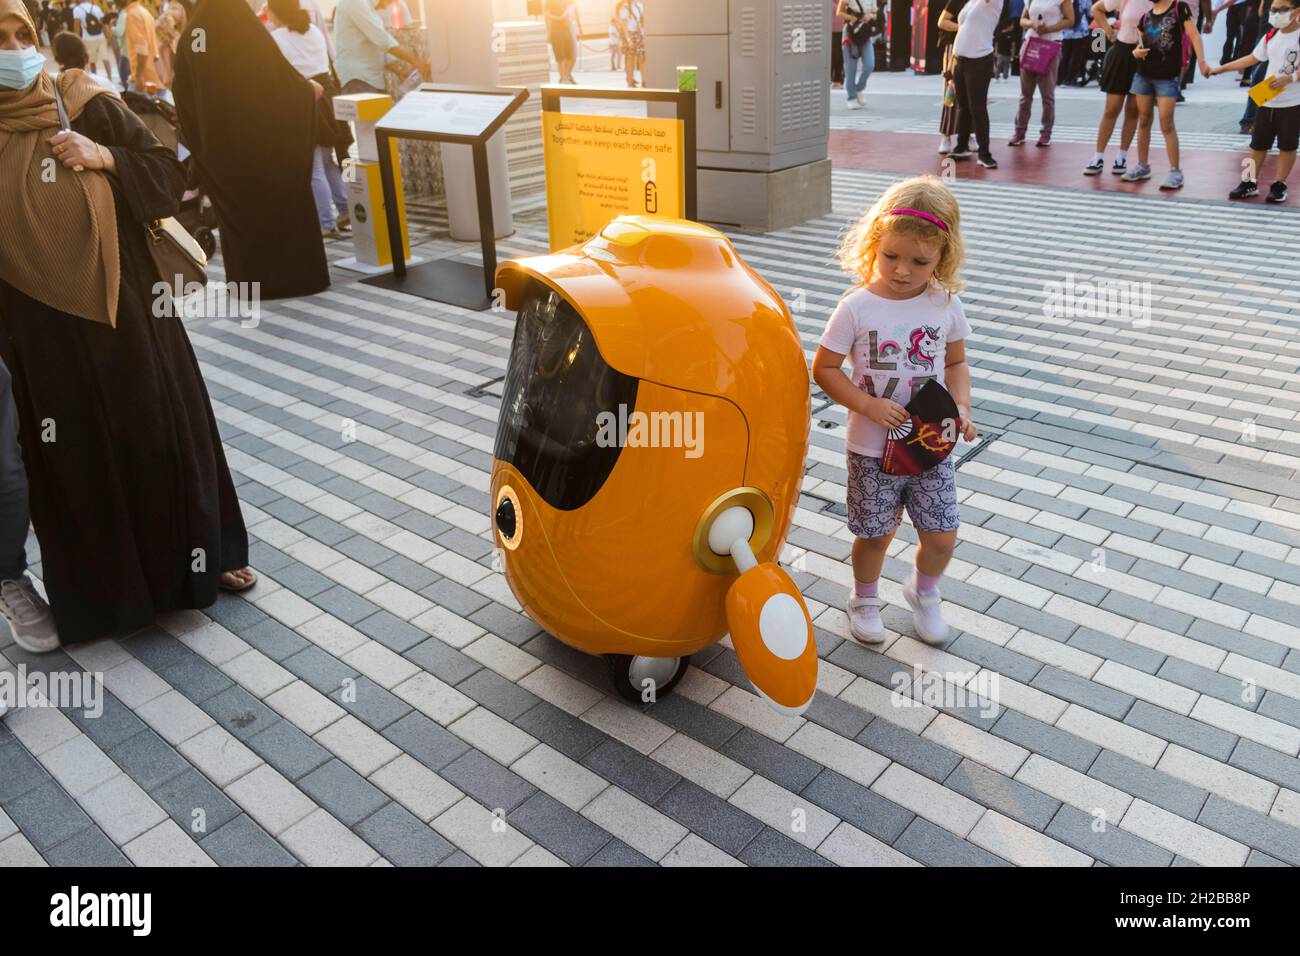 Dubai, VAE - 10.15.2021 Aufnahme eines kleinen Mädchens, das mit einem niedlichen kleinen Roboter an der EXPO 2020 spielt. Ereignis Stockfoto